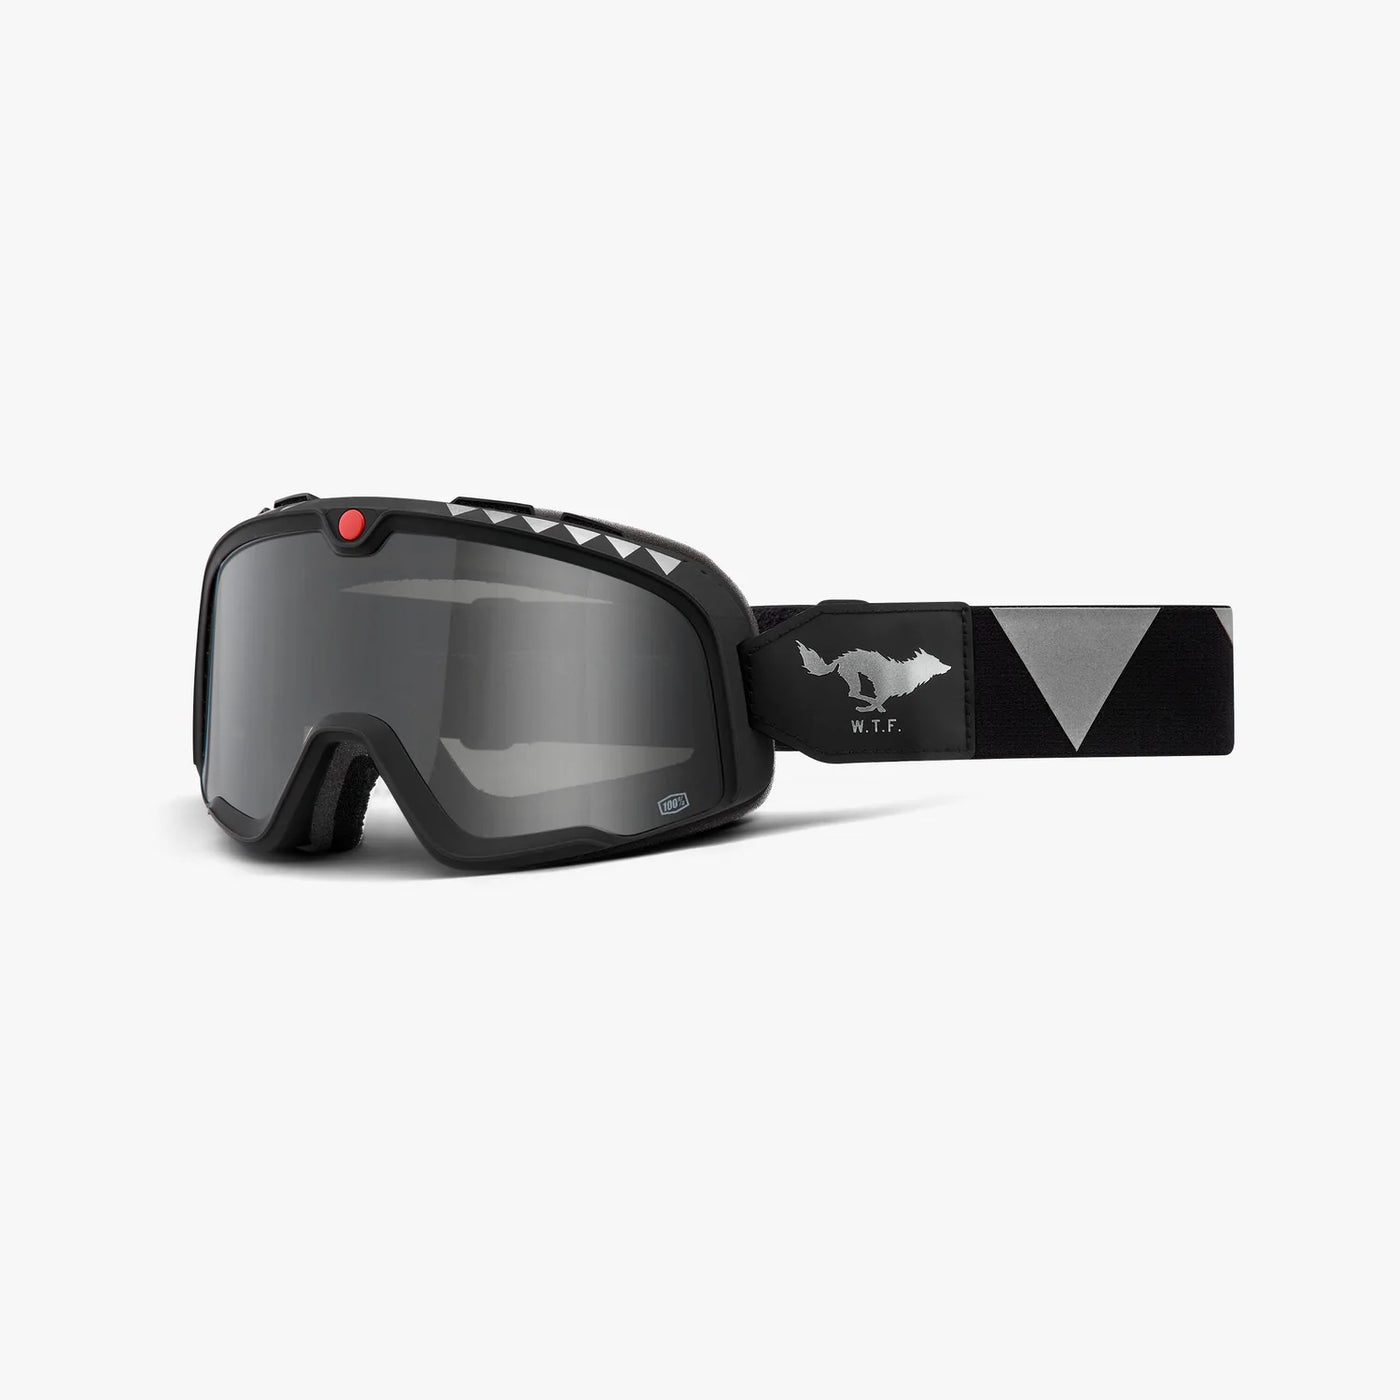 BARSTOW Goggle El Solitario Moto Smoke Lens